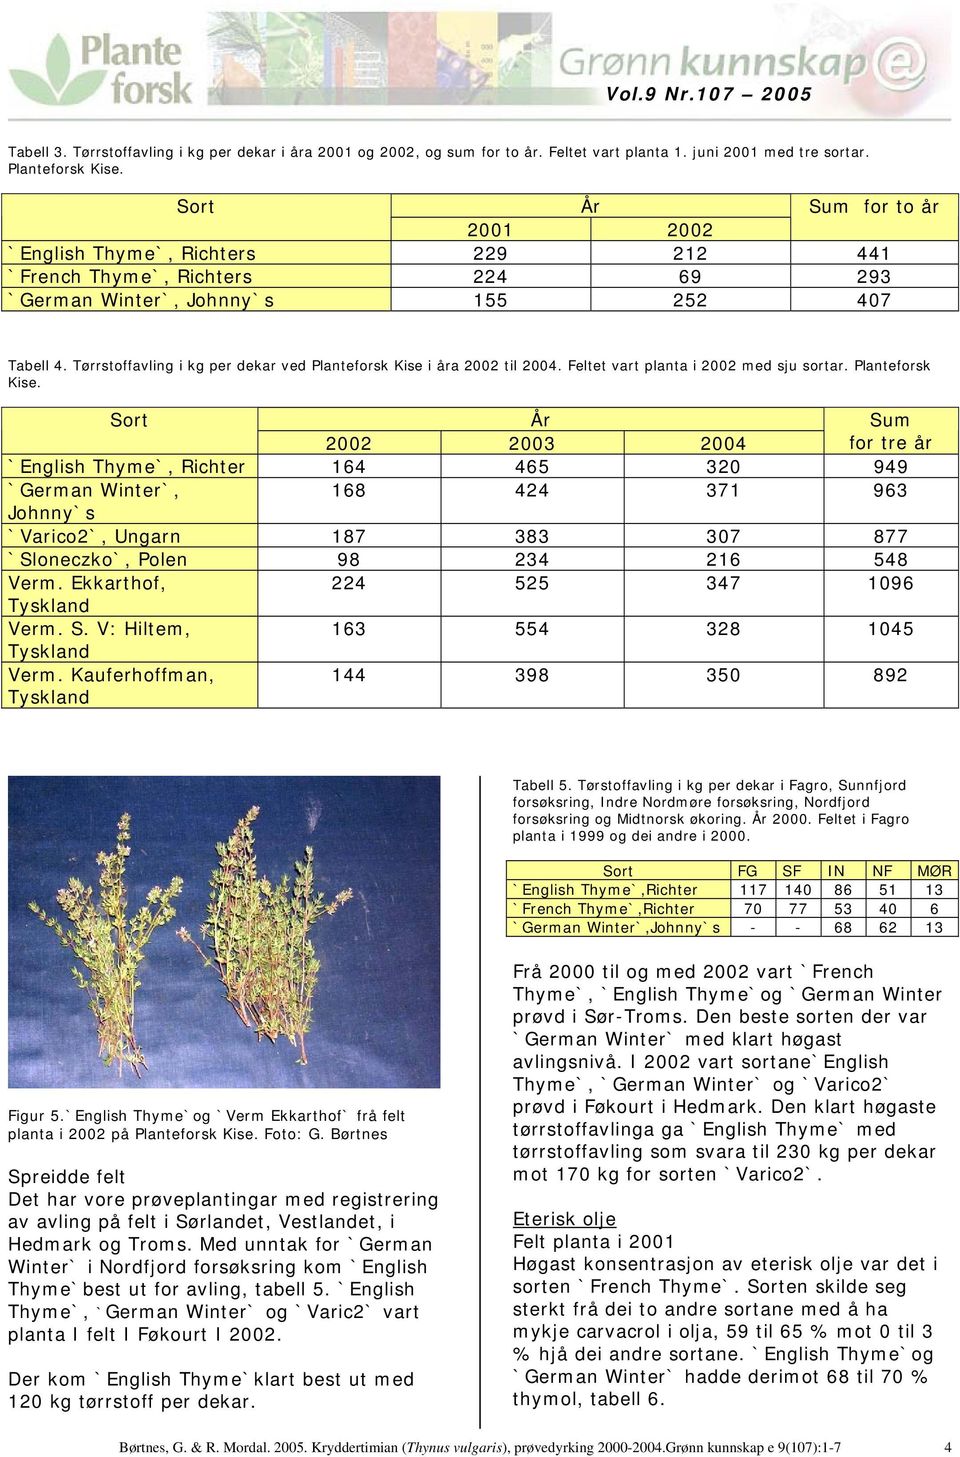 Tørrstoffavling i kg per dekar ved Planteforsk Kise 